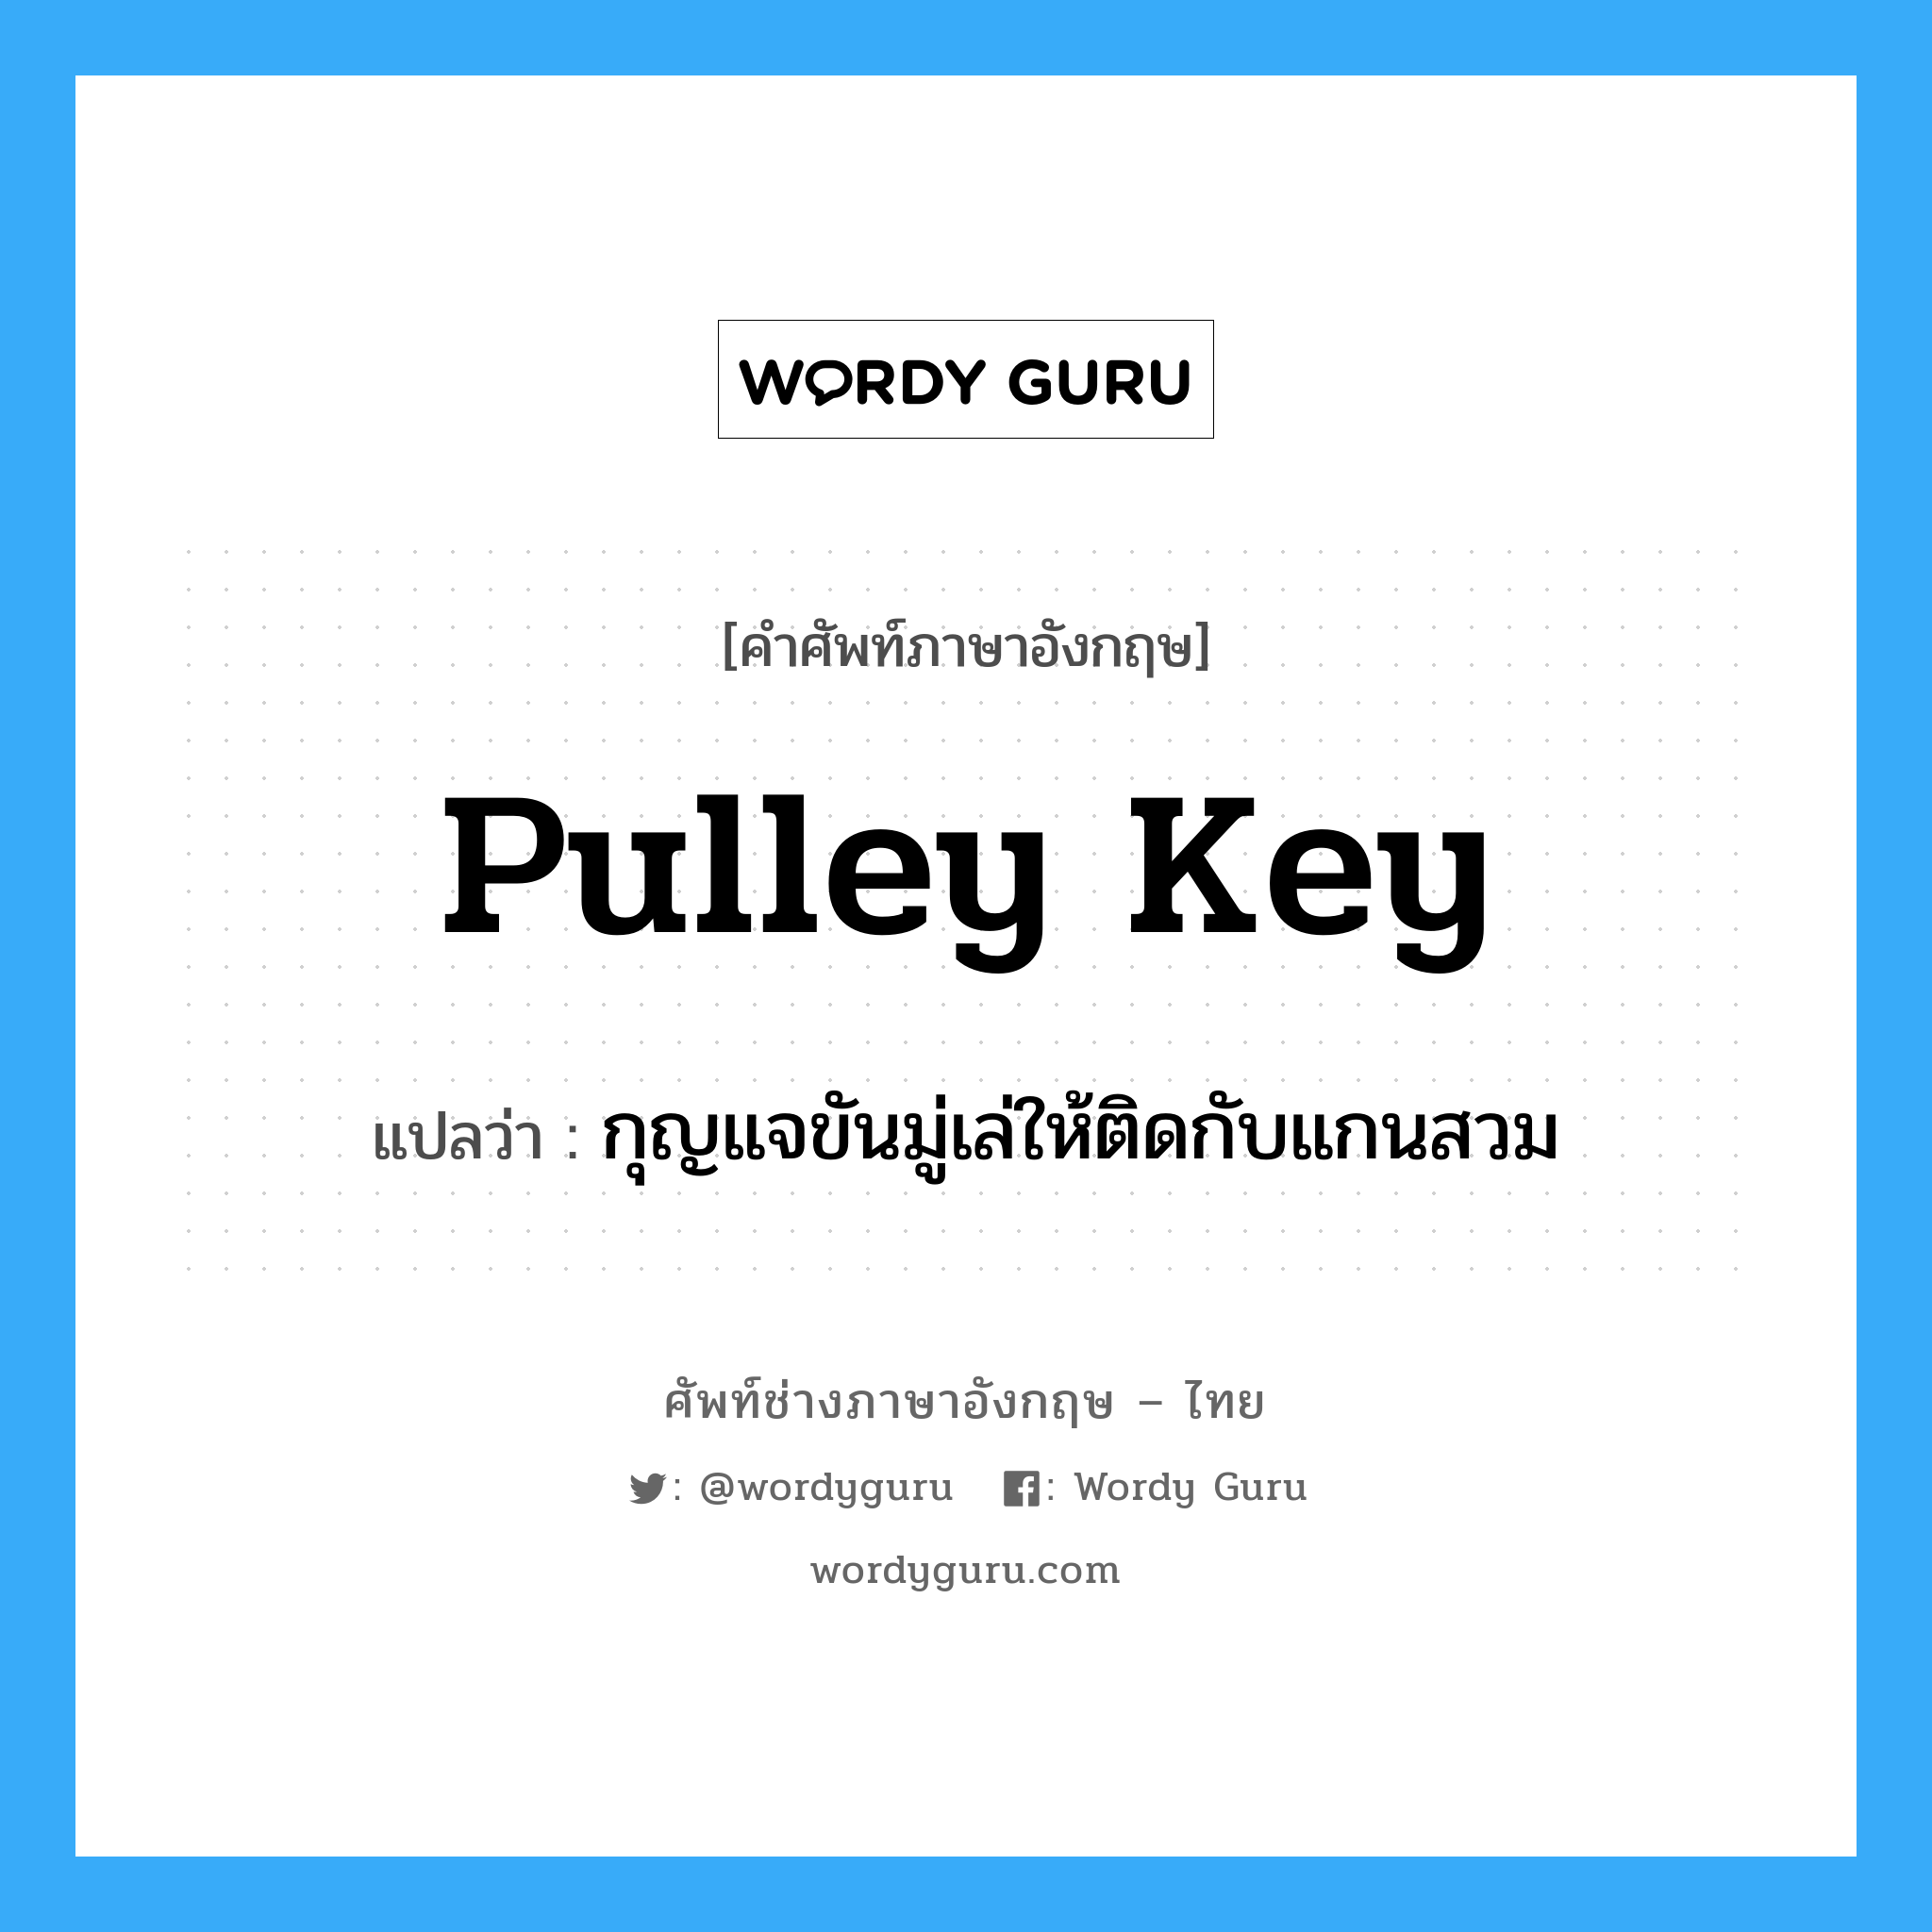 กุญแจขันมู่เล่ให้ติดกับแกนสวม ภาษาอังกฤษ?, คำศัพท์ช่างภาษาอังกฤษ - ไทย กุญแจขันมู่เล่ให้ติดกับแกนสวม คำศัพท์ภาษาอังกฤษ กุญแจขันมู่เล่ให้ติดกับแกนสวม แปลว่า pulley key